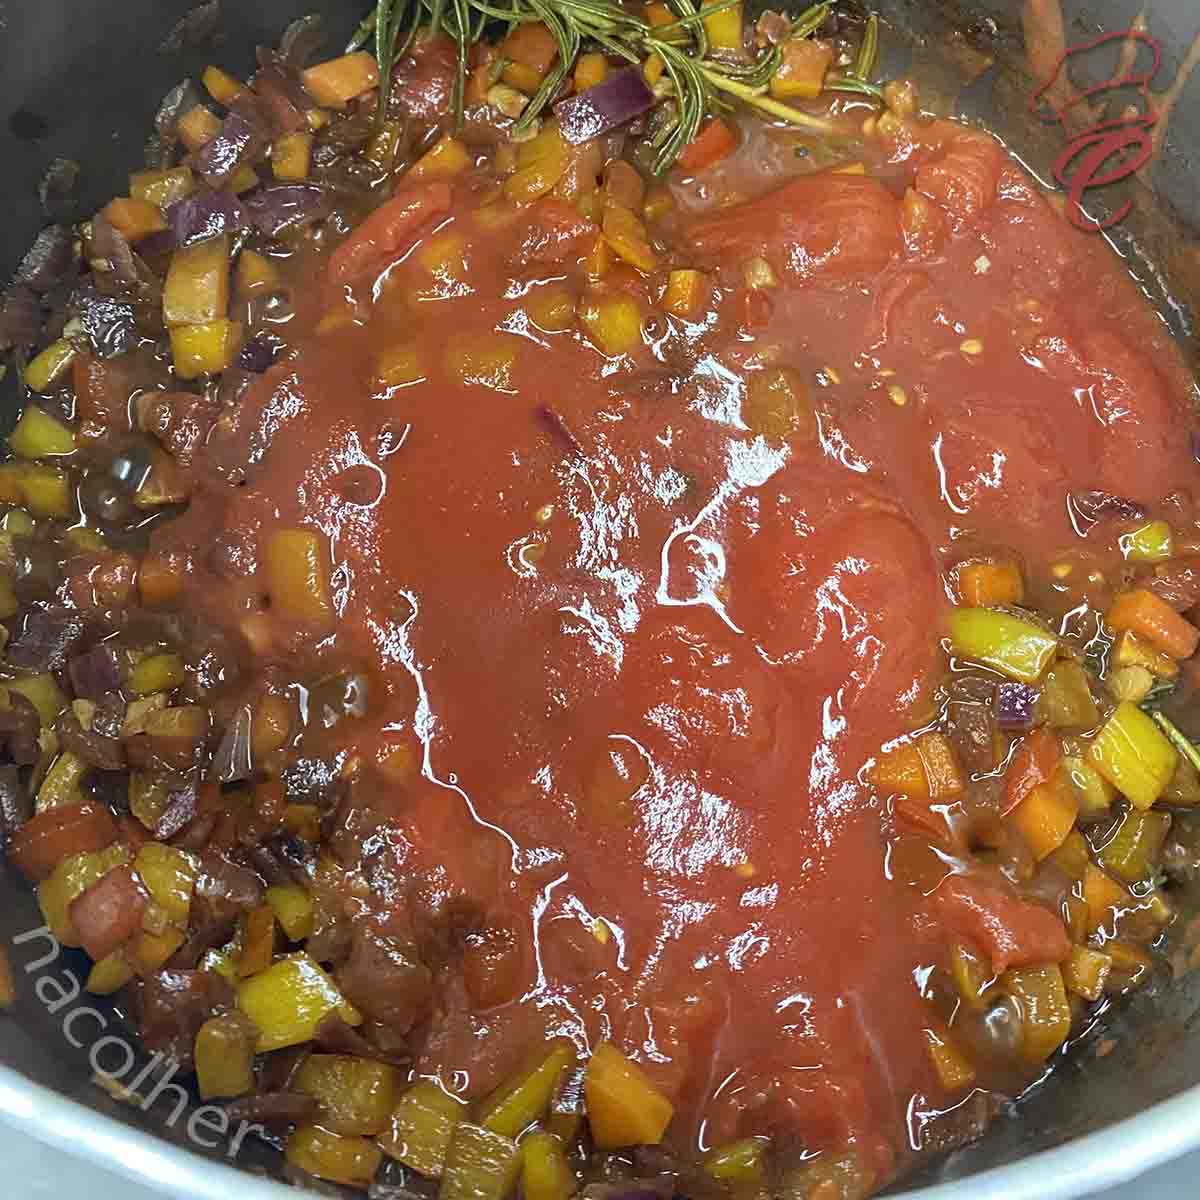 acrescentando o molho de tomate no refogado para preparar a carne do buraco quente